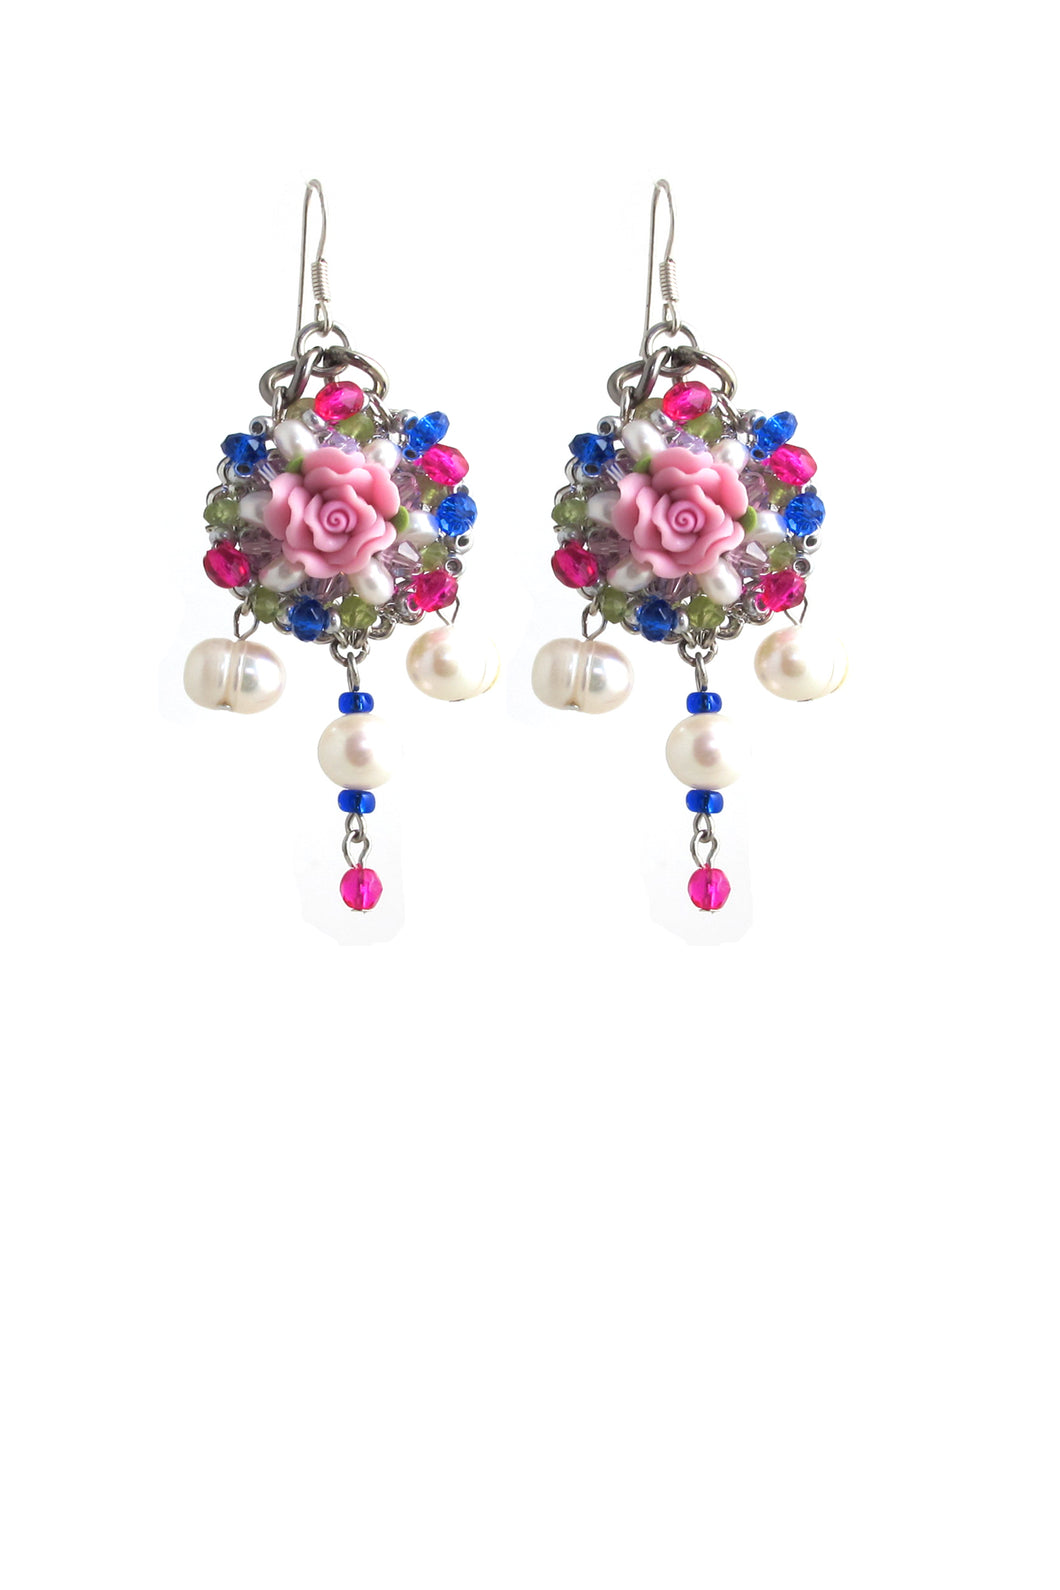 SALE - Pearl London Flower Earrings